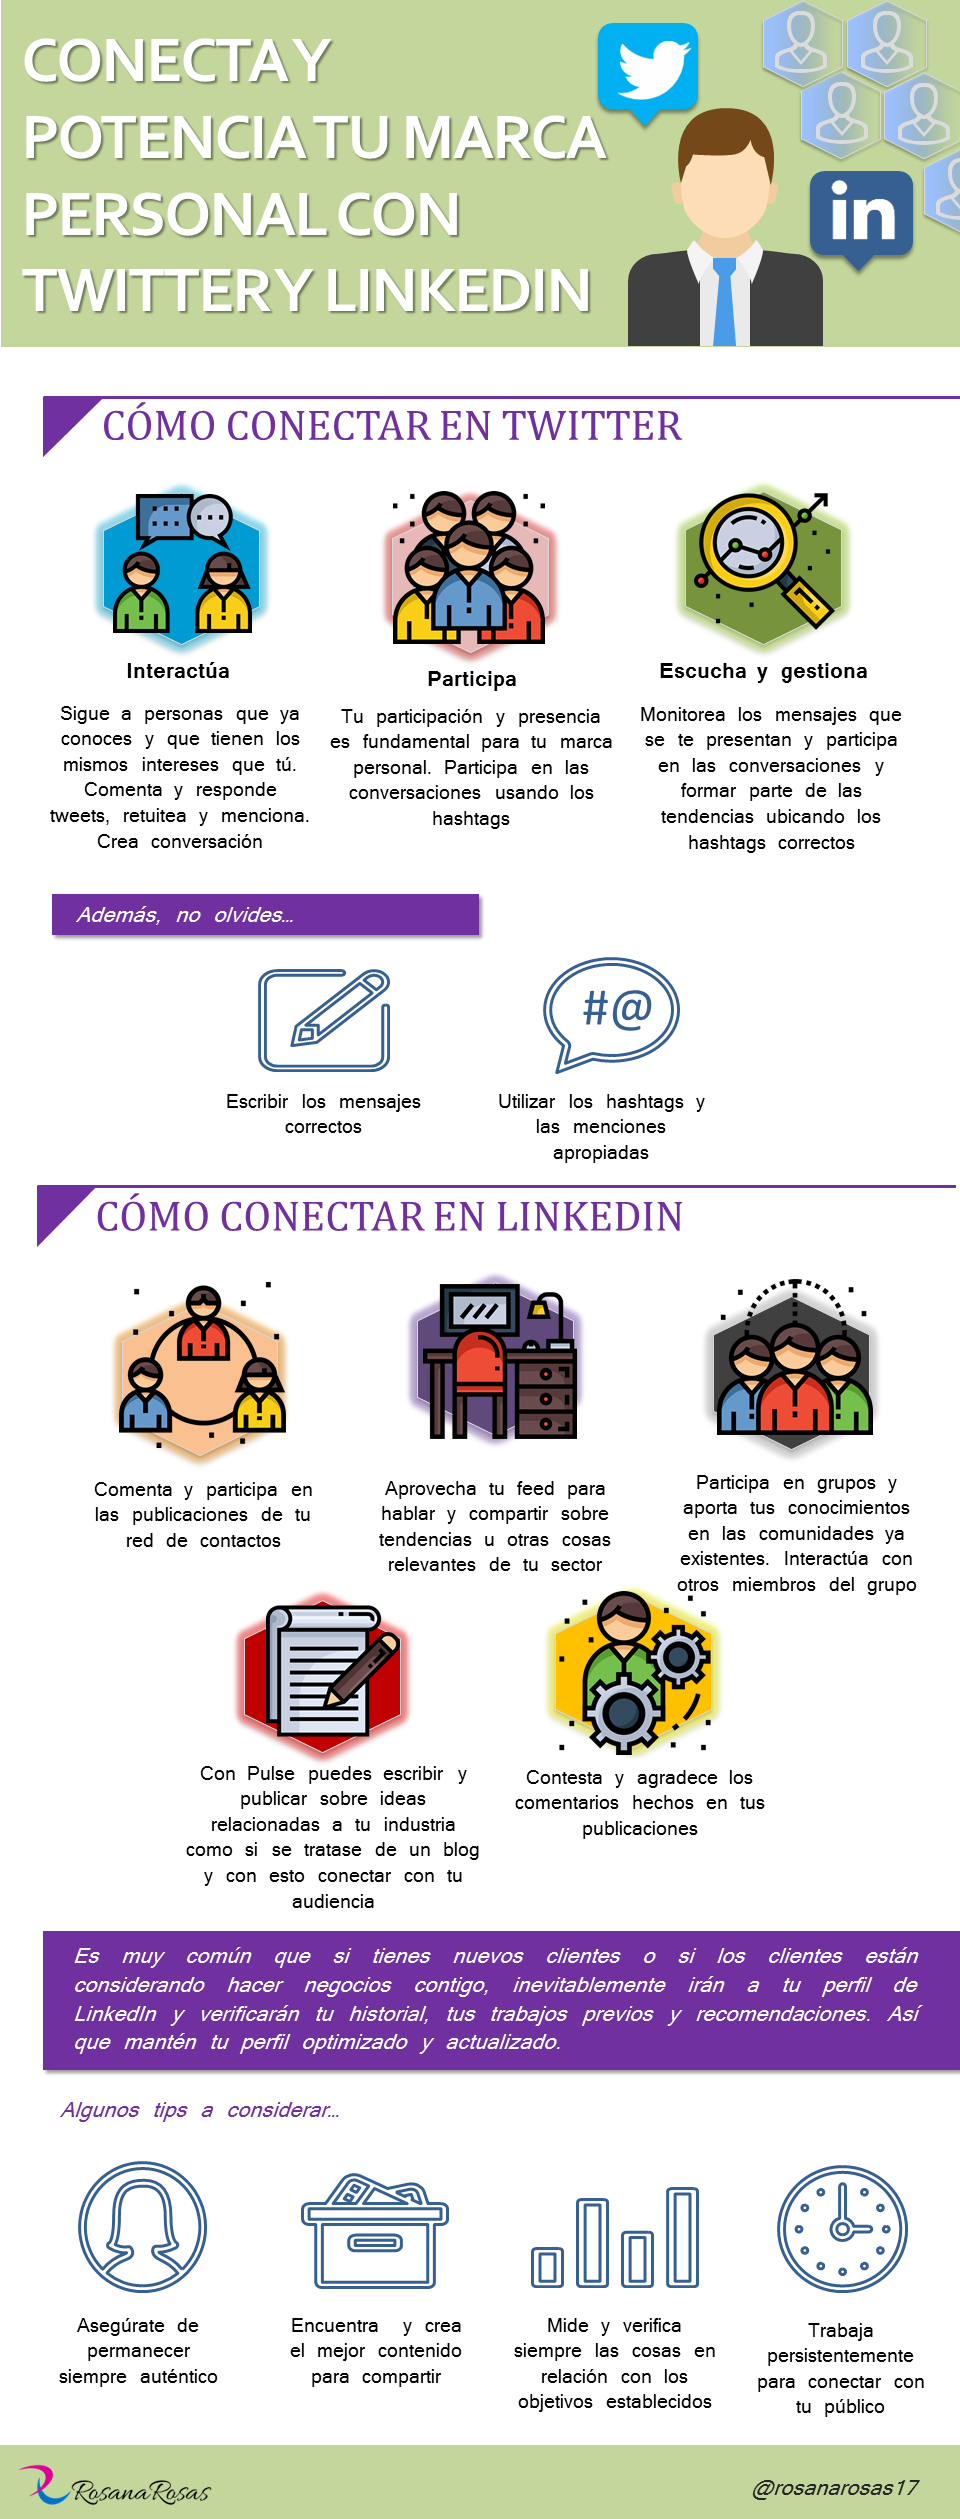 Infografia - Conecta tu Marca Personal con Twitter y Facebook #infografia #socialmedia #marketing - TICs y Formación